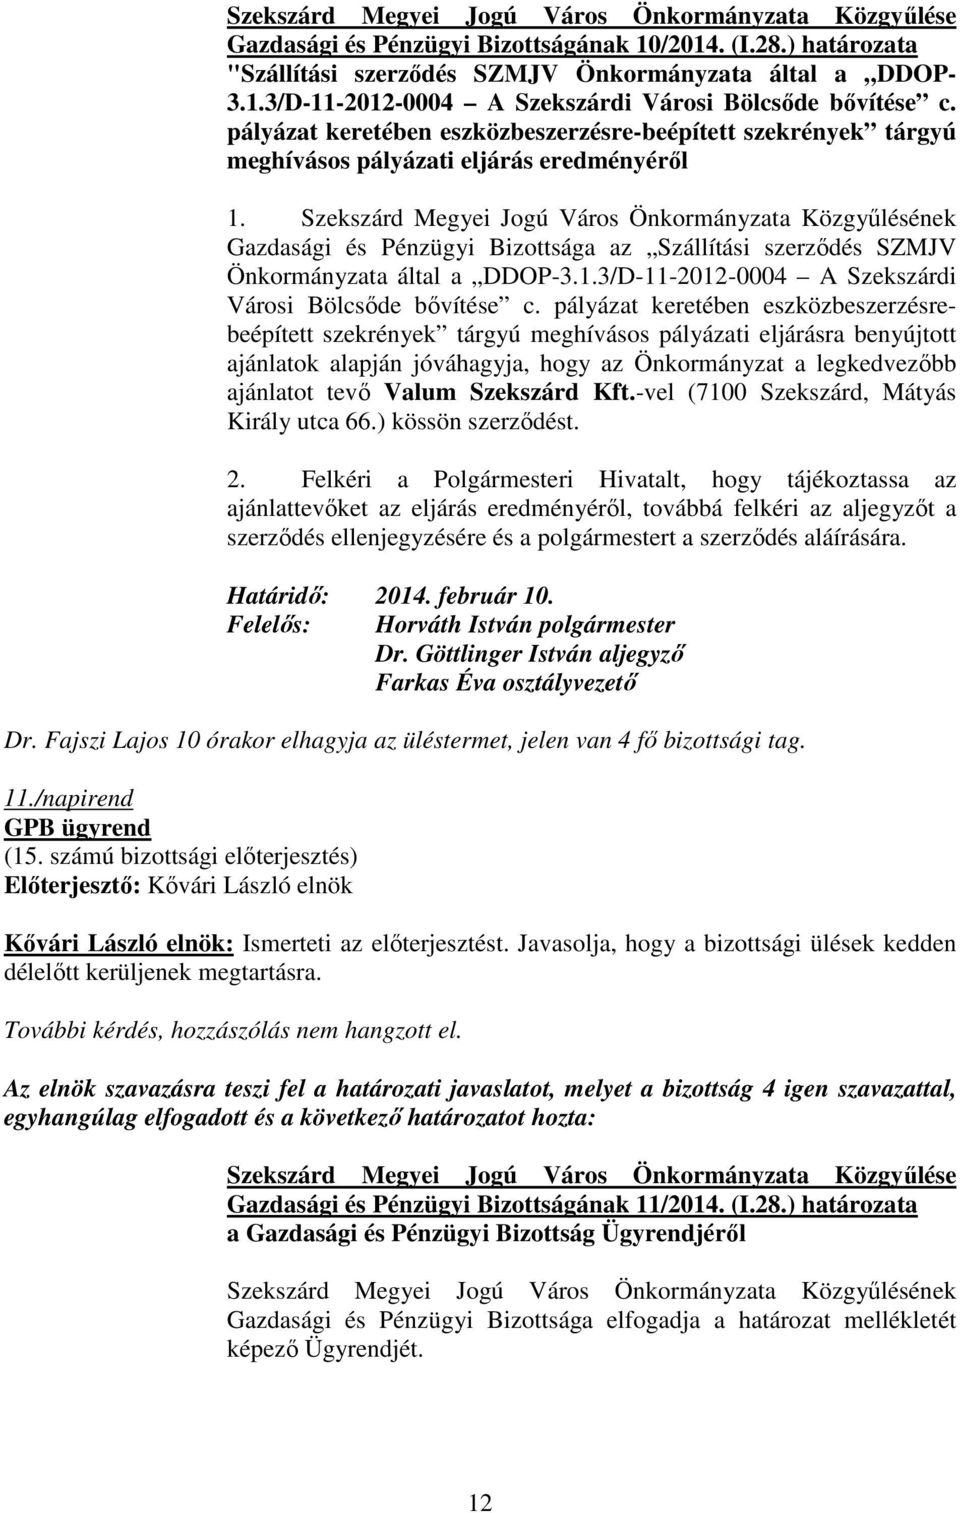 Gazdasági és Pénzügyi Bizottsága az Szállítási szerzıdés SZMJV Önkormányzata által a DDOP-3.1.3/D-11-2012-0004 A Szekszárdi Városi Bölcsıde bıvítése c.